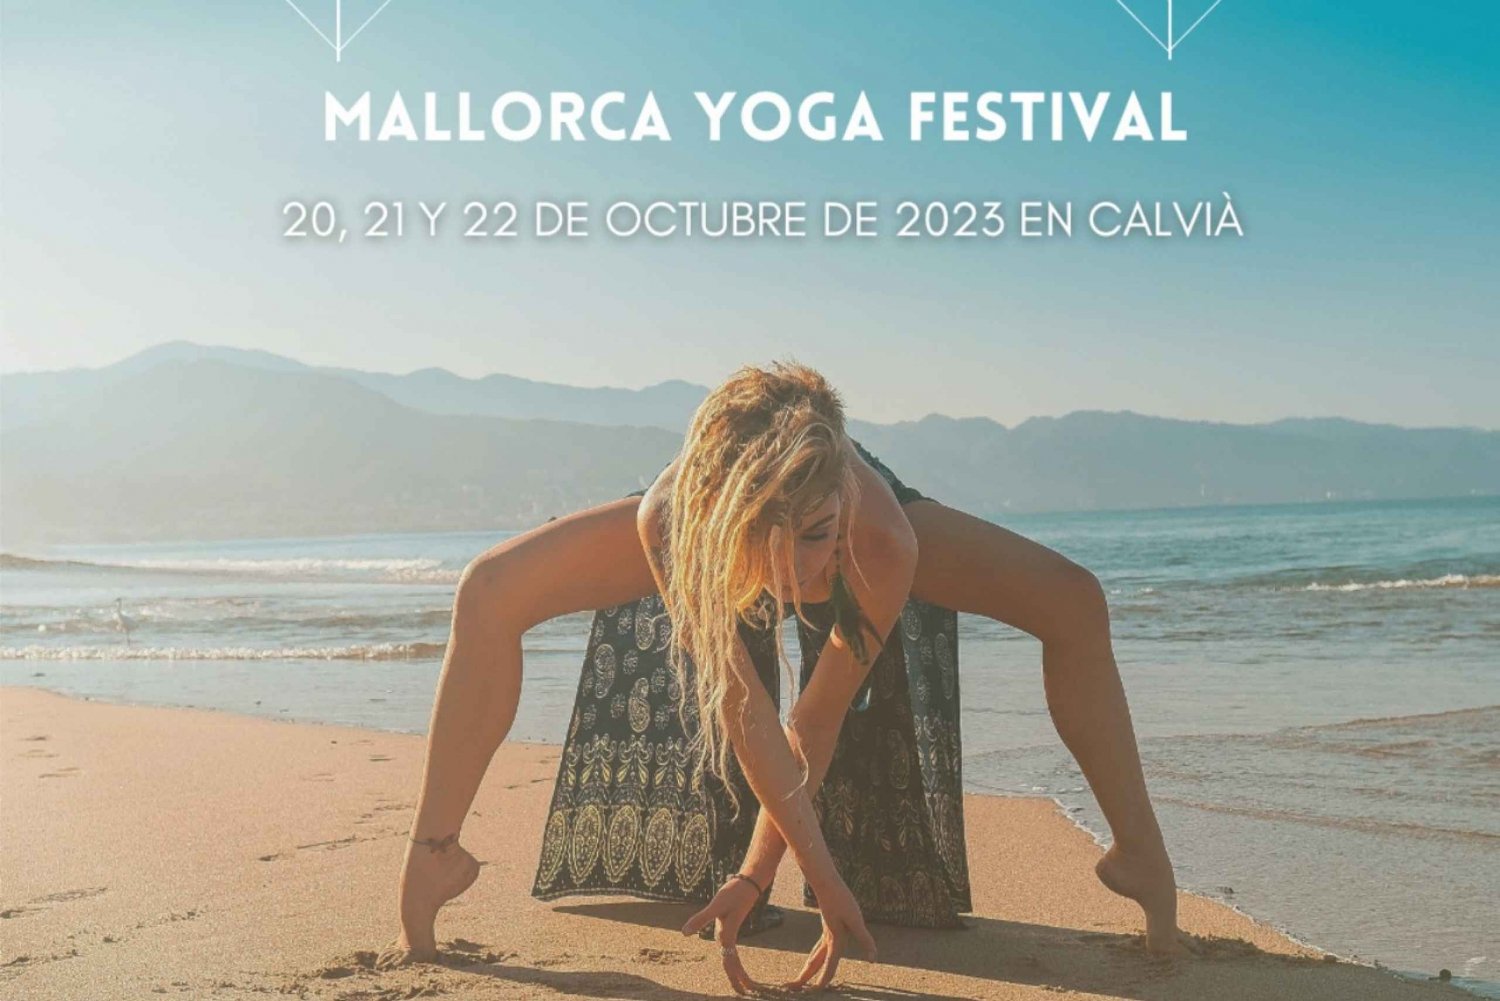 Mallorca Yoga Festival -October 20,21&22 in Calviá